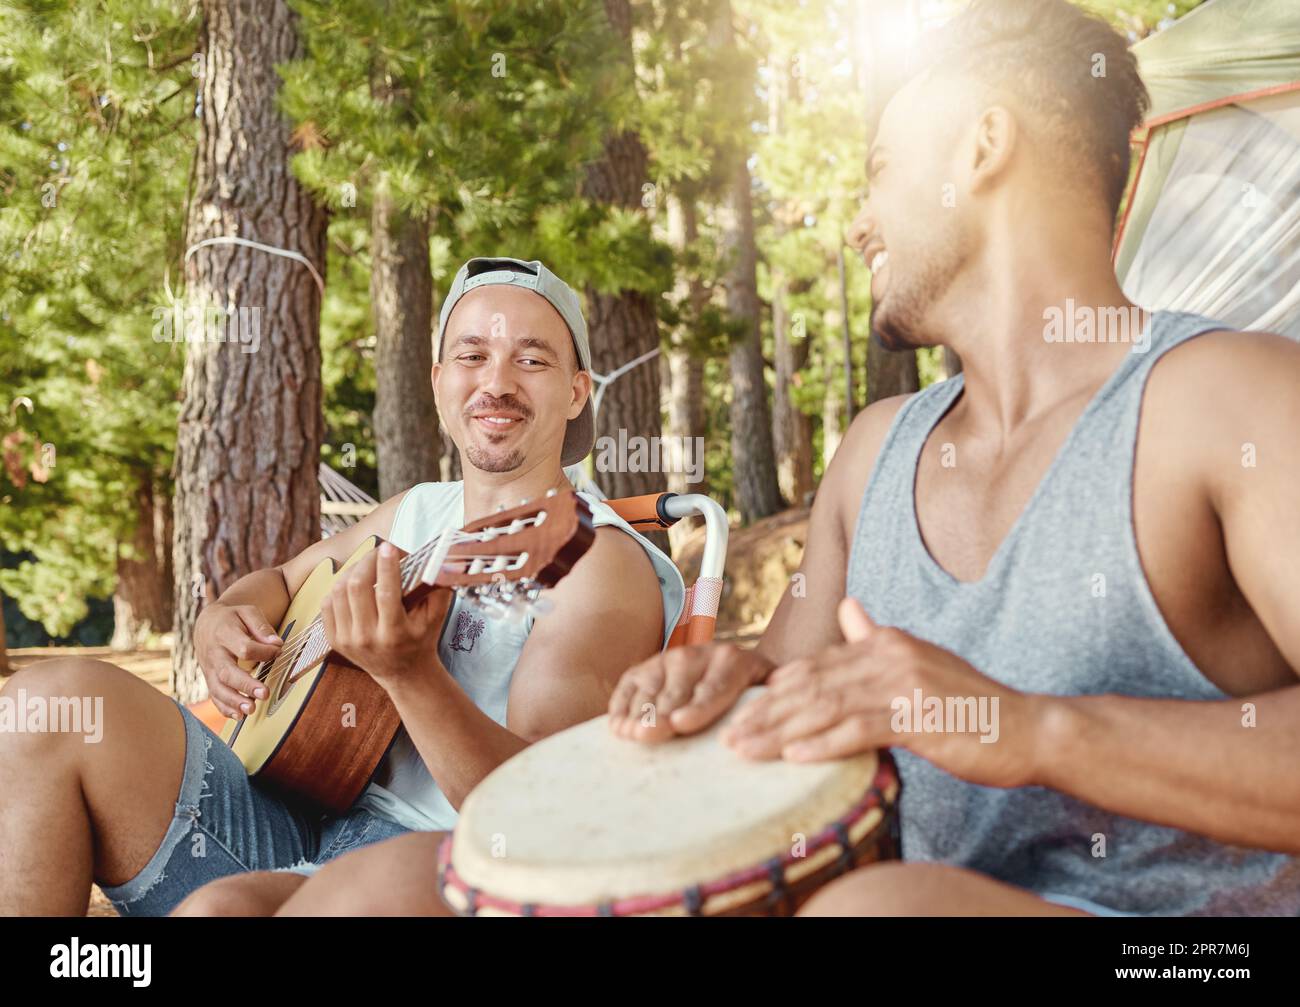 Musik machen im Wald. Zwei junge Männer sitzen und spielen Musikinstrumente während eines Campingausflugs im Wald. Stockfoto